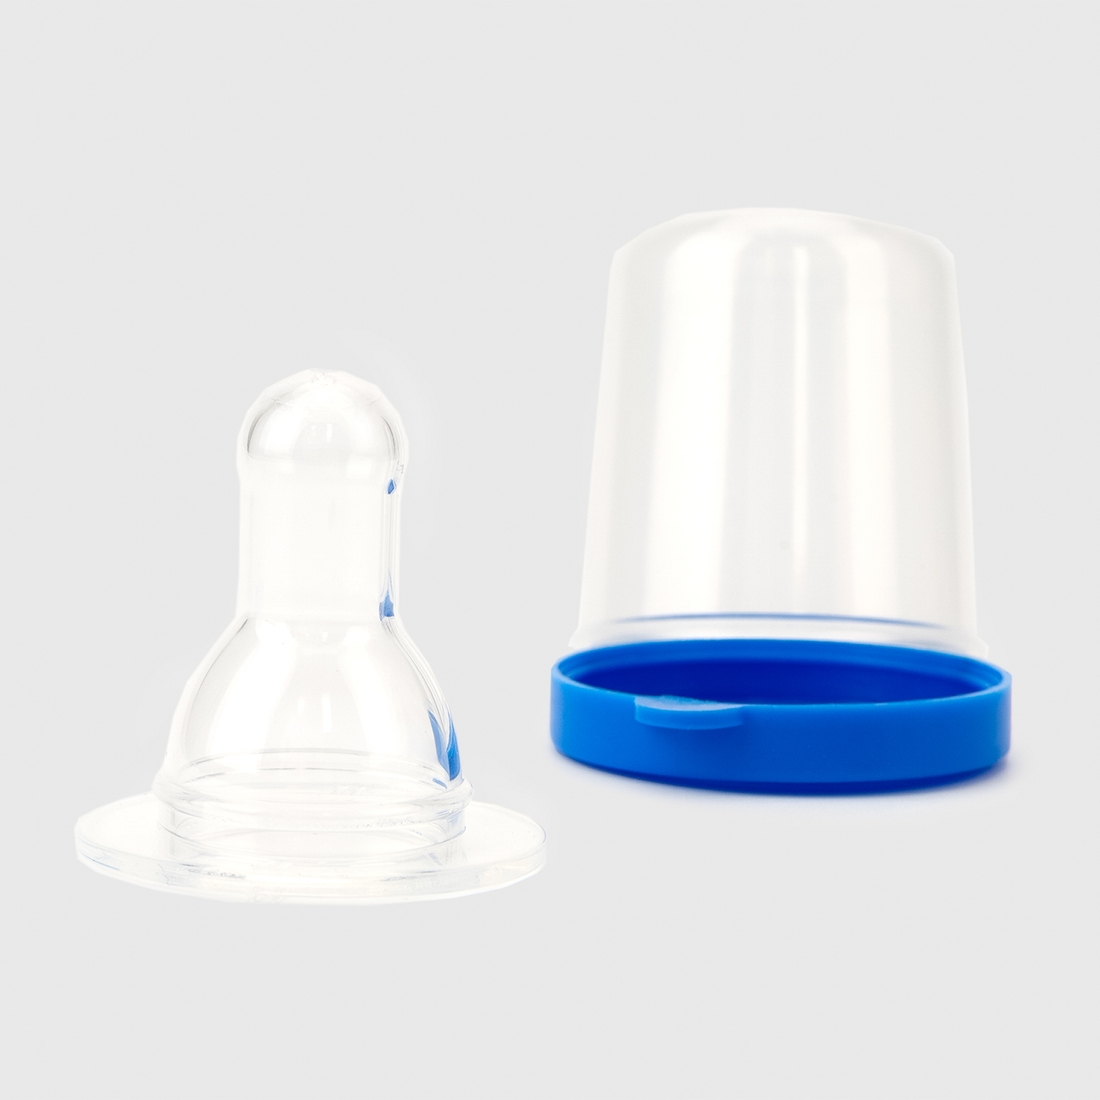 Фото Соска силіконова кругла Lindo Pk 051/L для пляшок із стандартним горлом Синій (2000901469942)